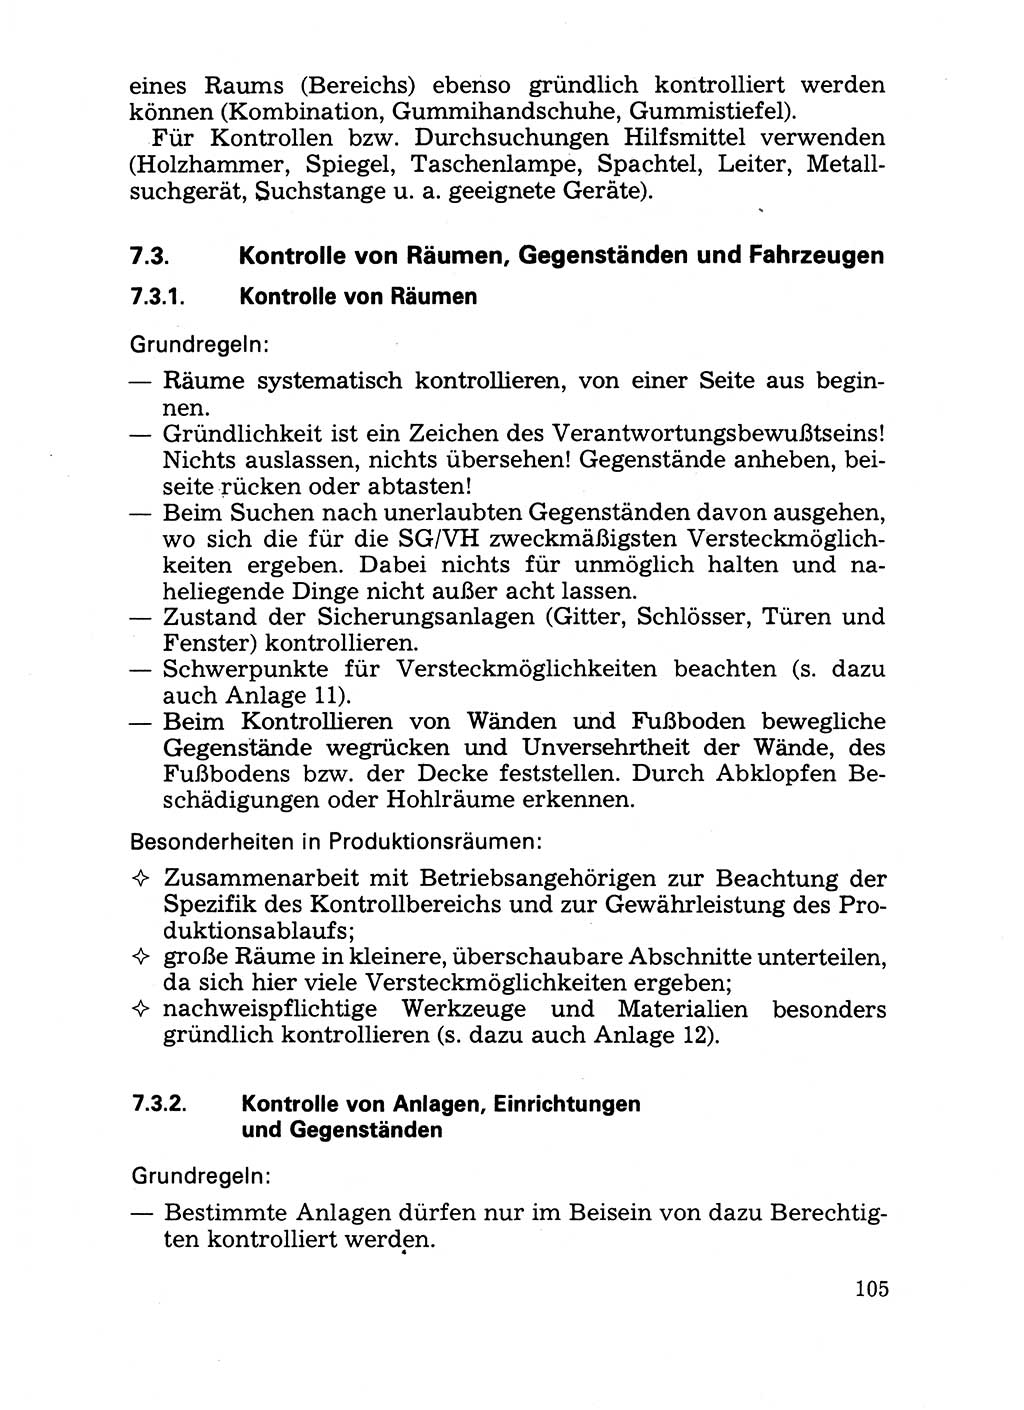 Handbuch für operative Dienste, Abteilung Strafvollzug (SV) [Ministerium des Innern (MdI) Deutsche Demokratische Republik (DDR)] 1981, Seite 105 (Hb. op. D. Abt. SV MdI DDR 1981, S. 105)